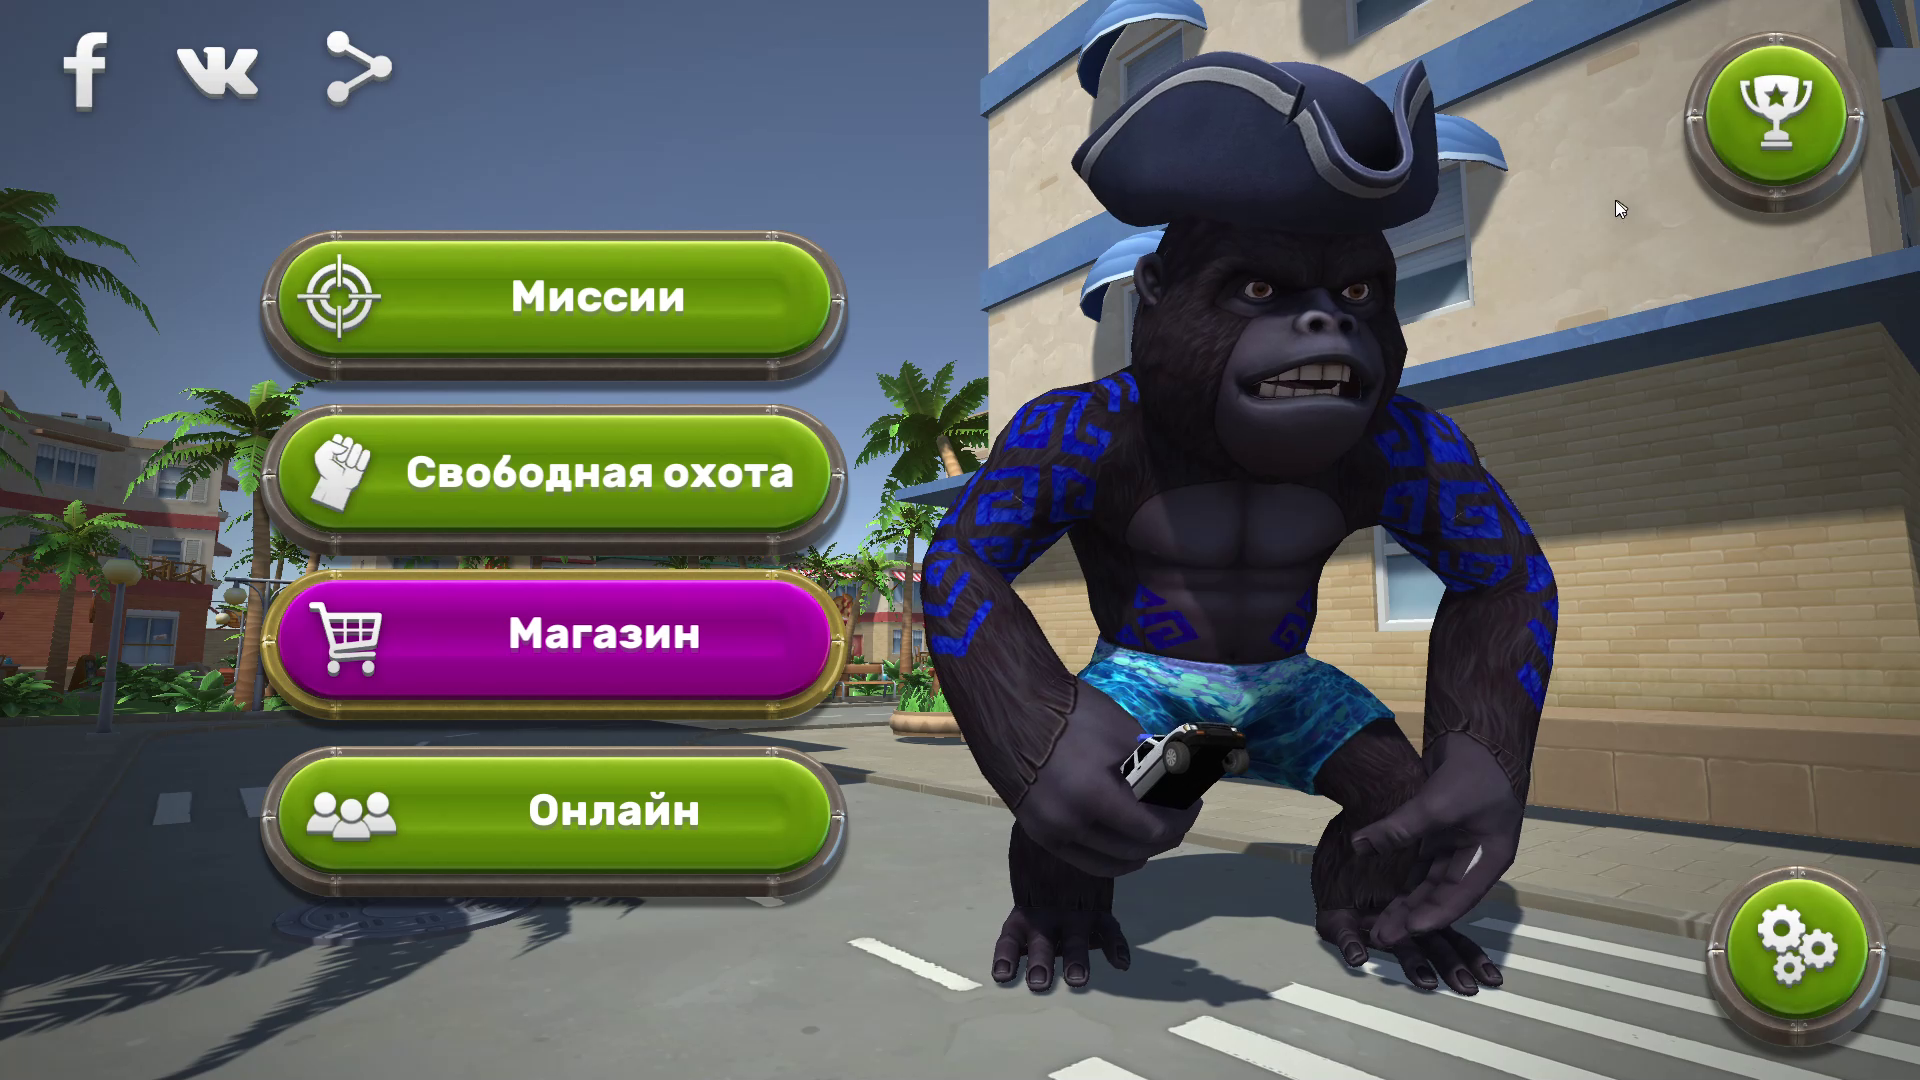 Gorilla01